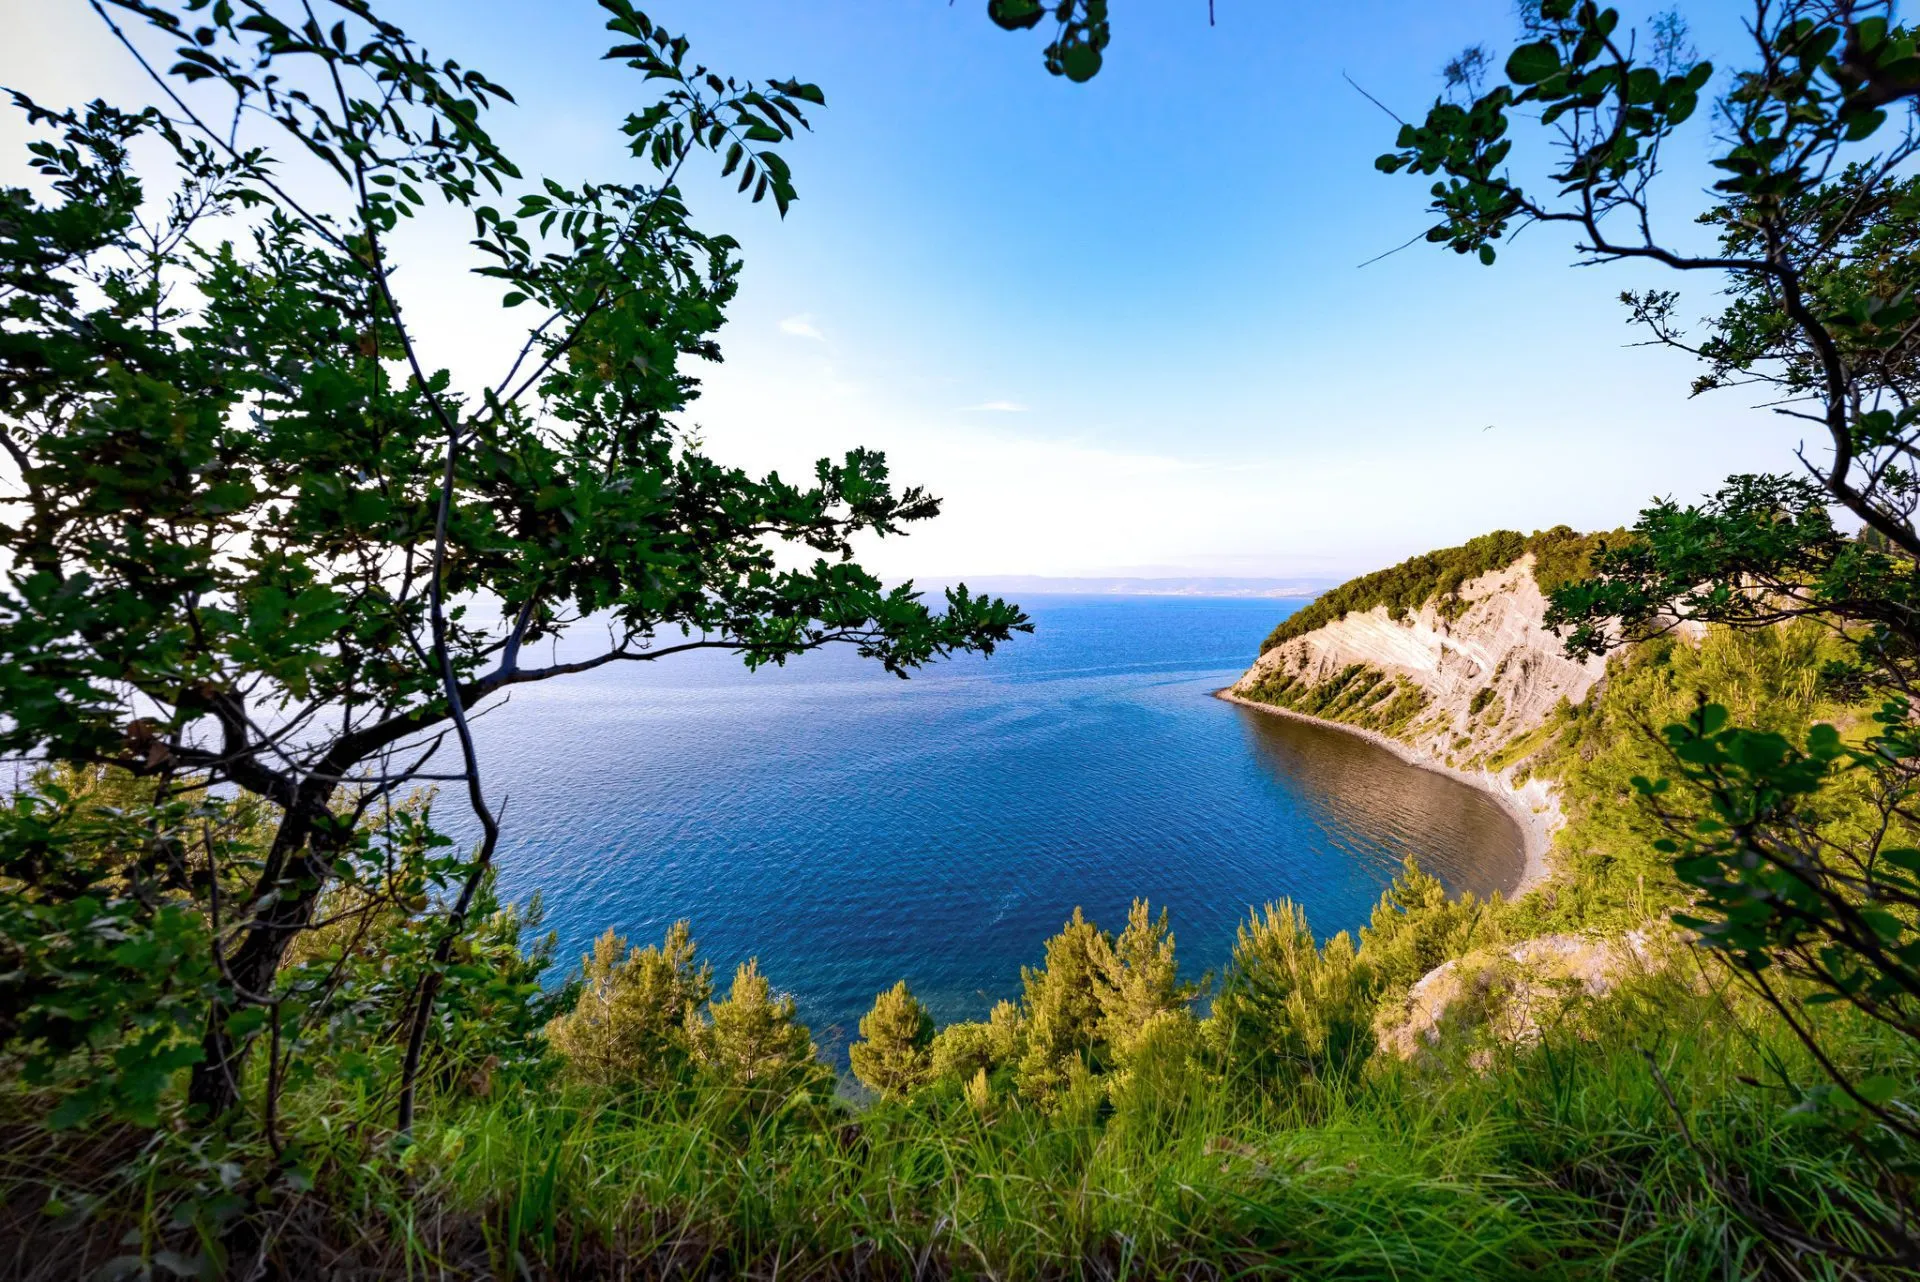 Strunjan-stranden på den slovenska kusten skalad 1